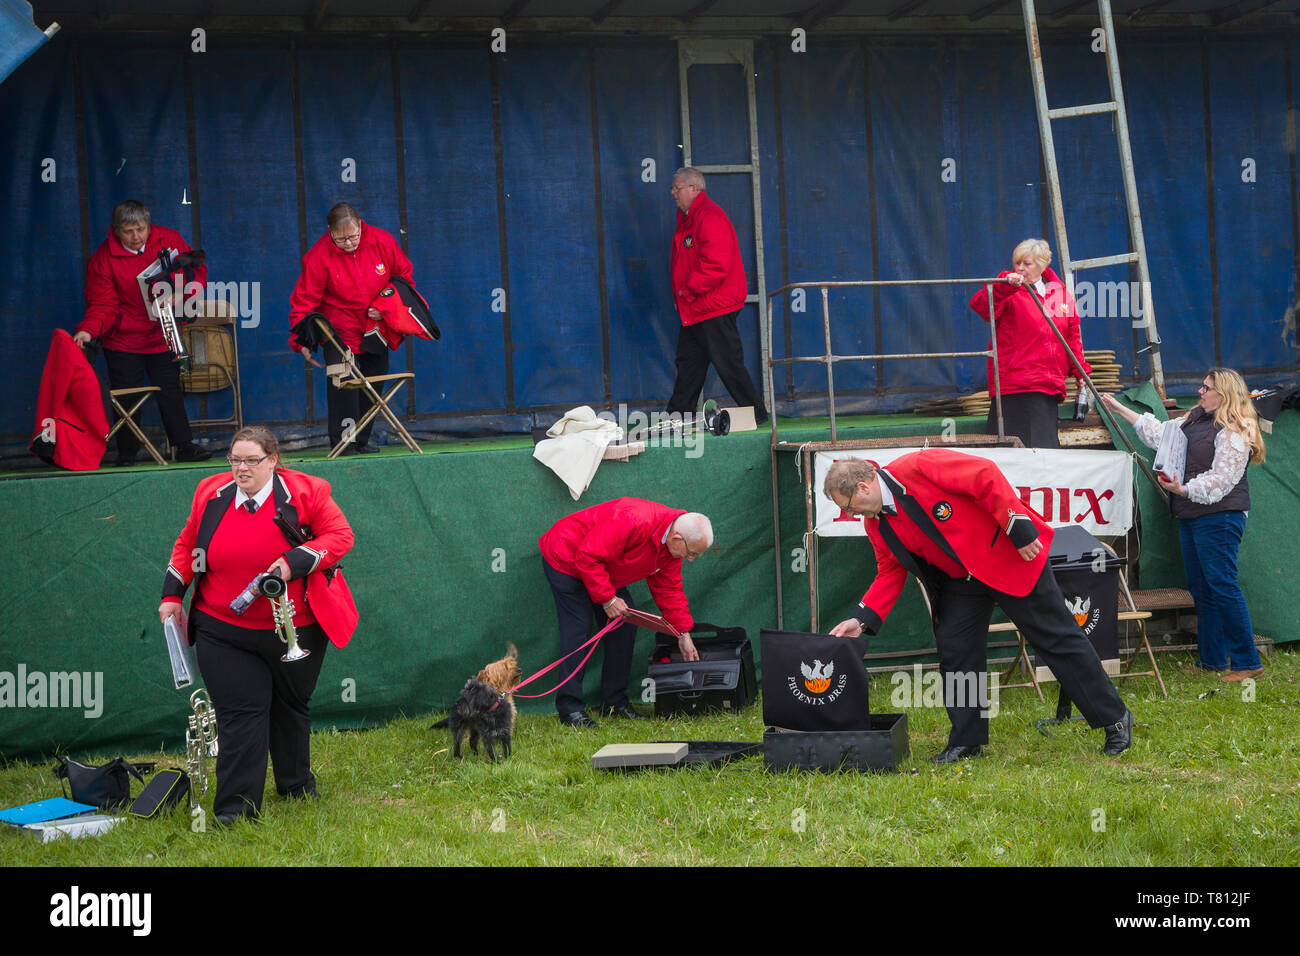 Mitglieder des Phoenix Brass Band in hellen roten Jacken Packen nach ihrer Leistung an ein Land zeigen. Stockfoto